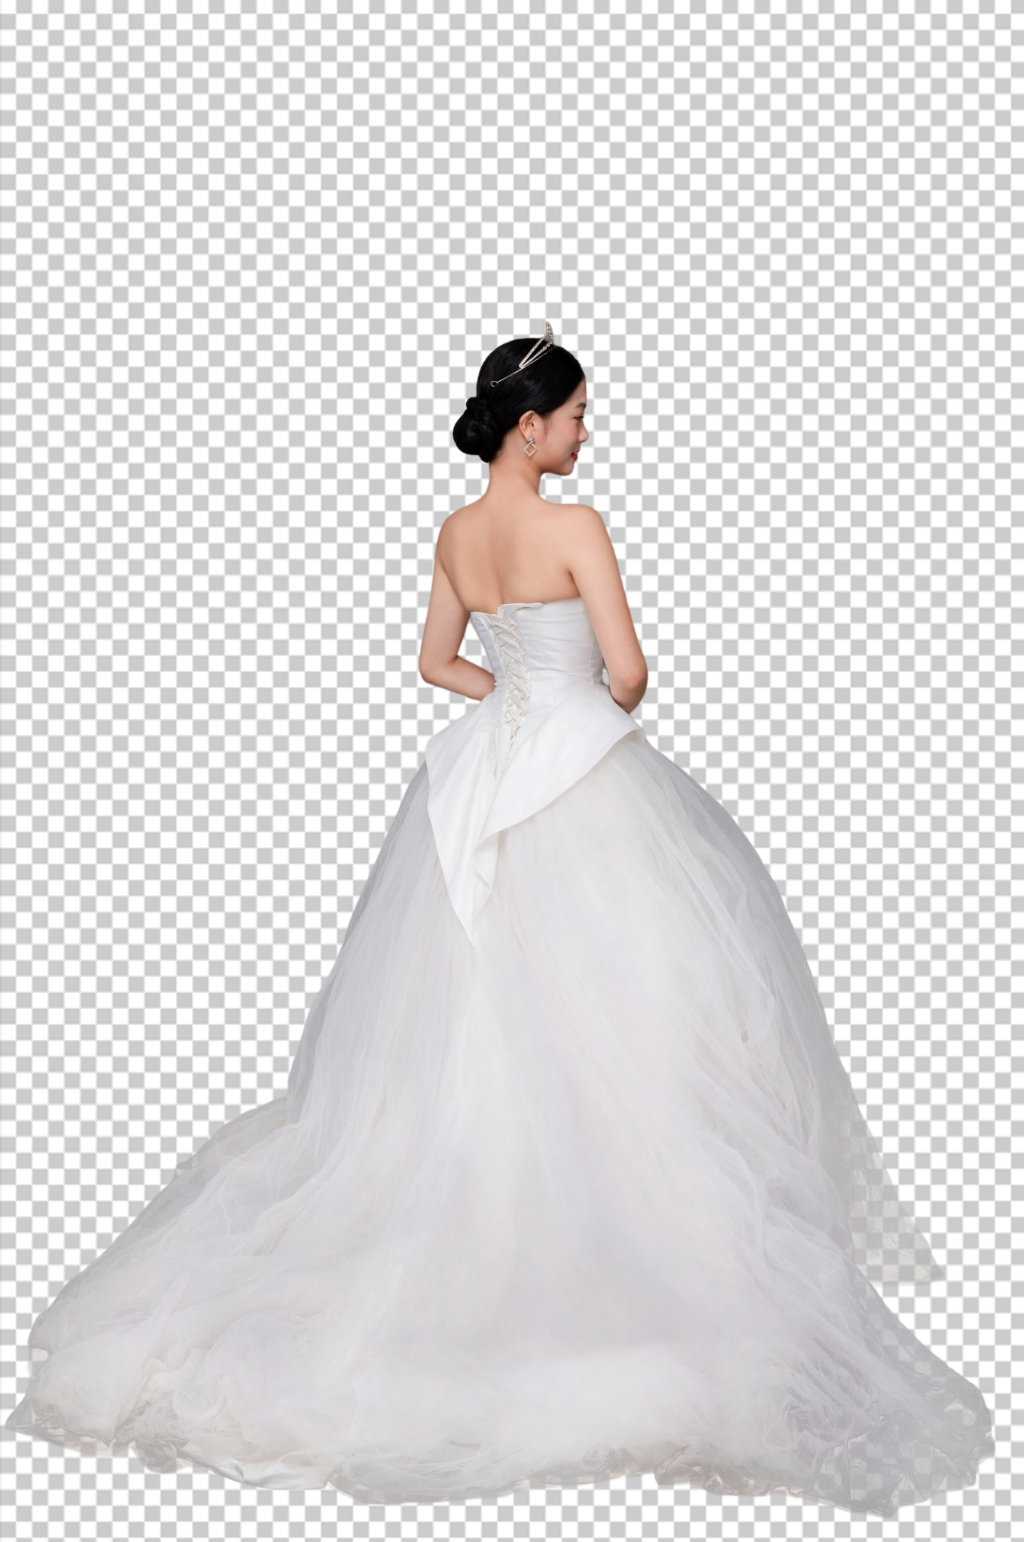 白色婚纱照婚礼女性背影人物png摄影图立即下载浪漫婚纱png免抠素材